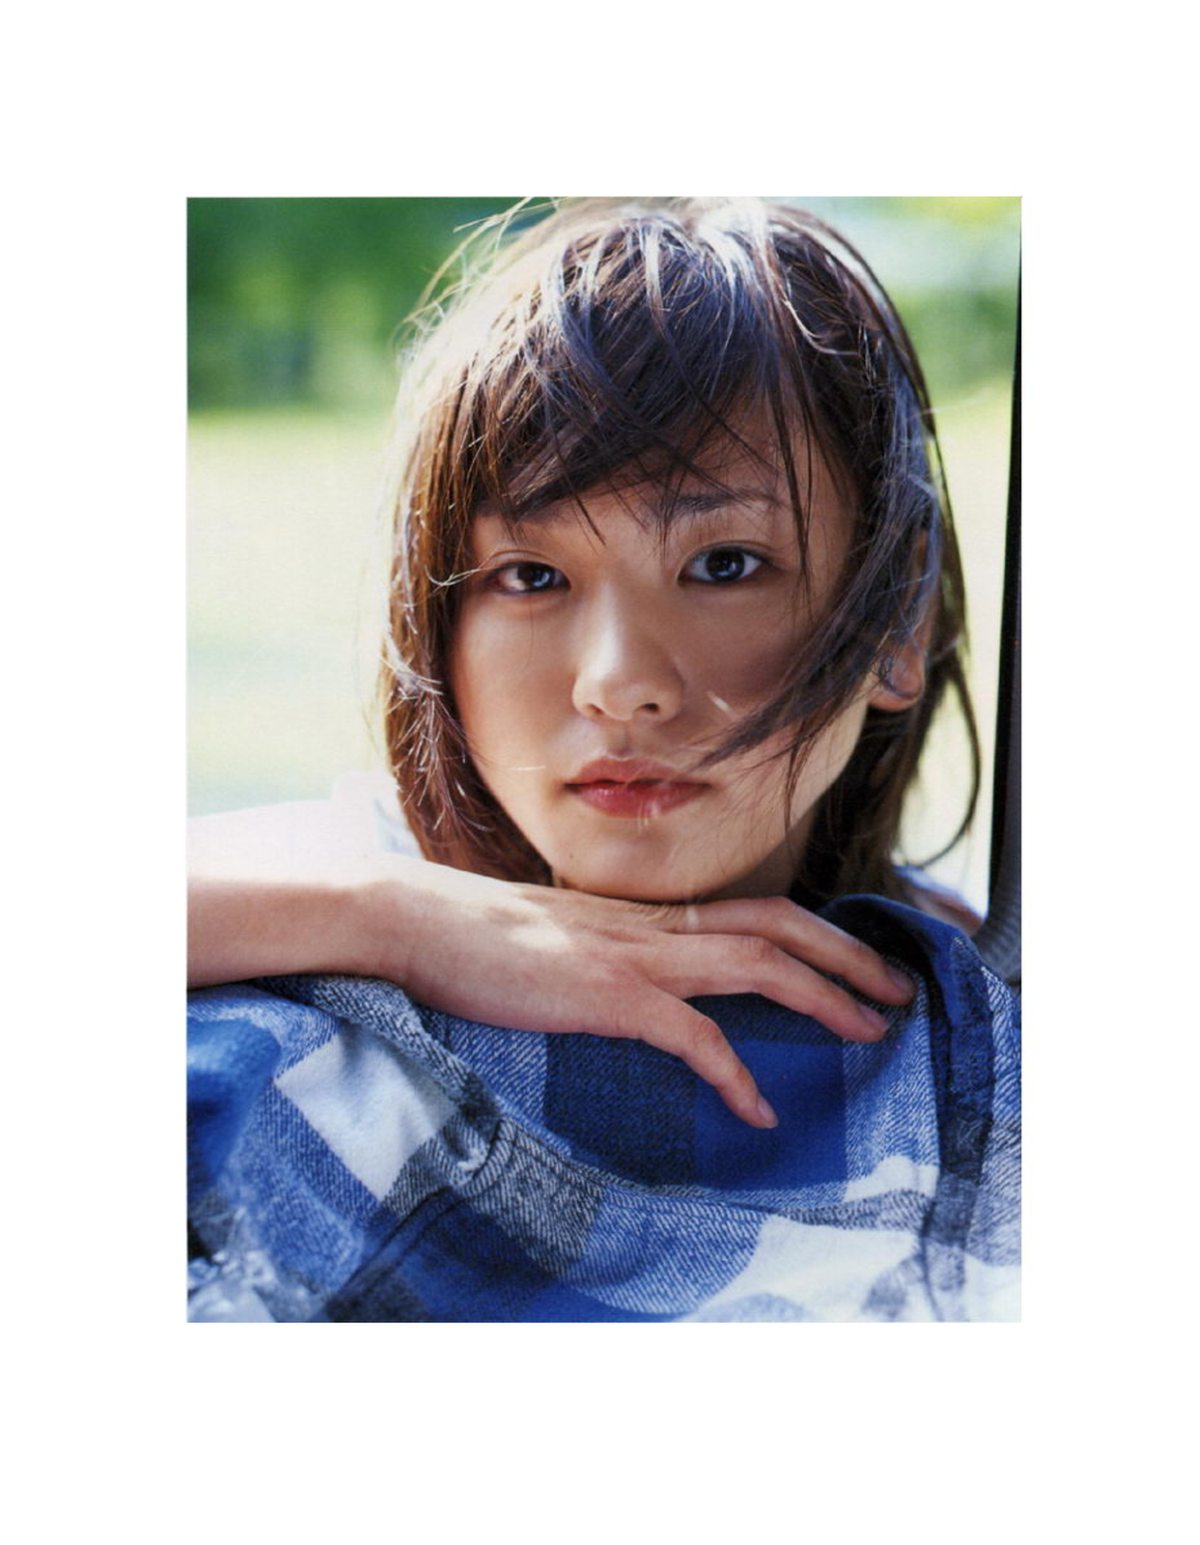 Photobook Yui Aragaki 新垣結衣 Chura Chura ちゅら ちゅら 2006 03 03 0091 0145772299.jpg